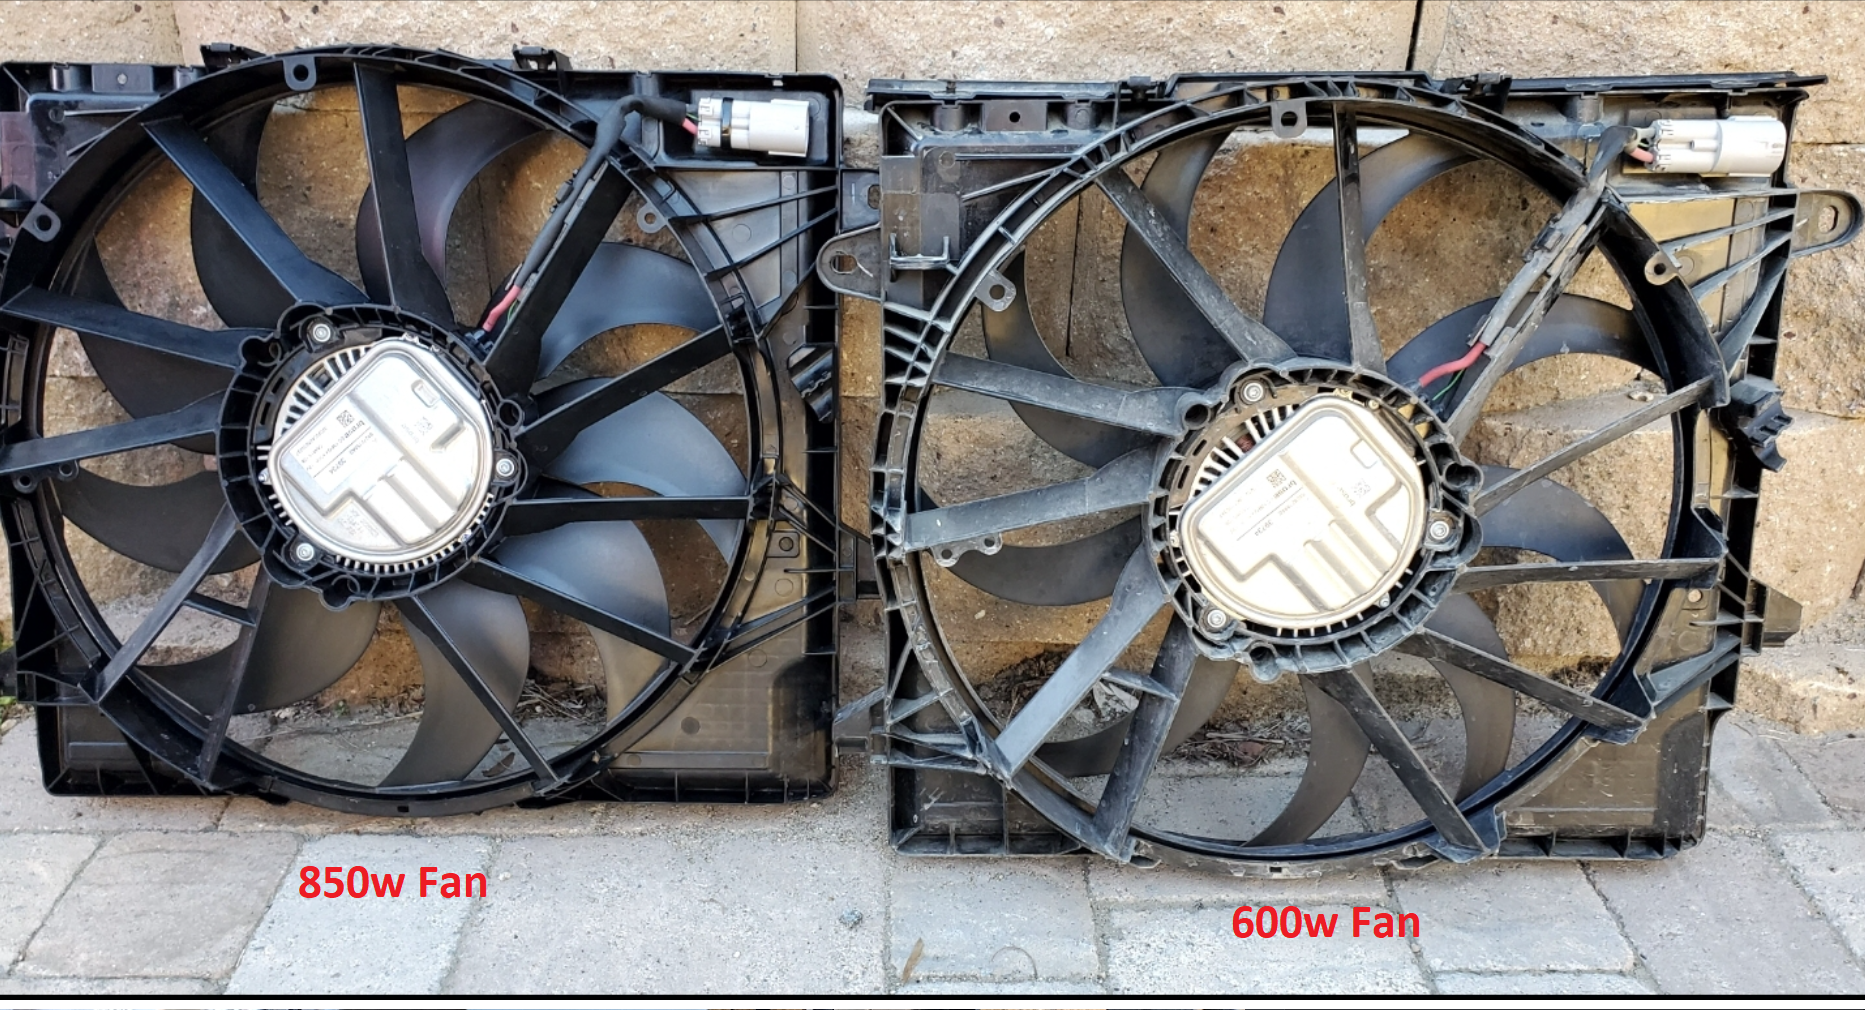 850 watt fan jeep wrangler vs the 600w fan